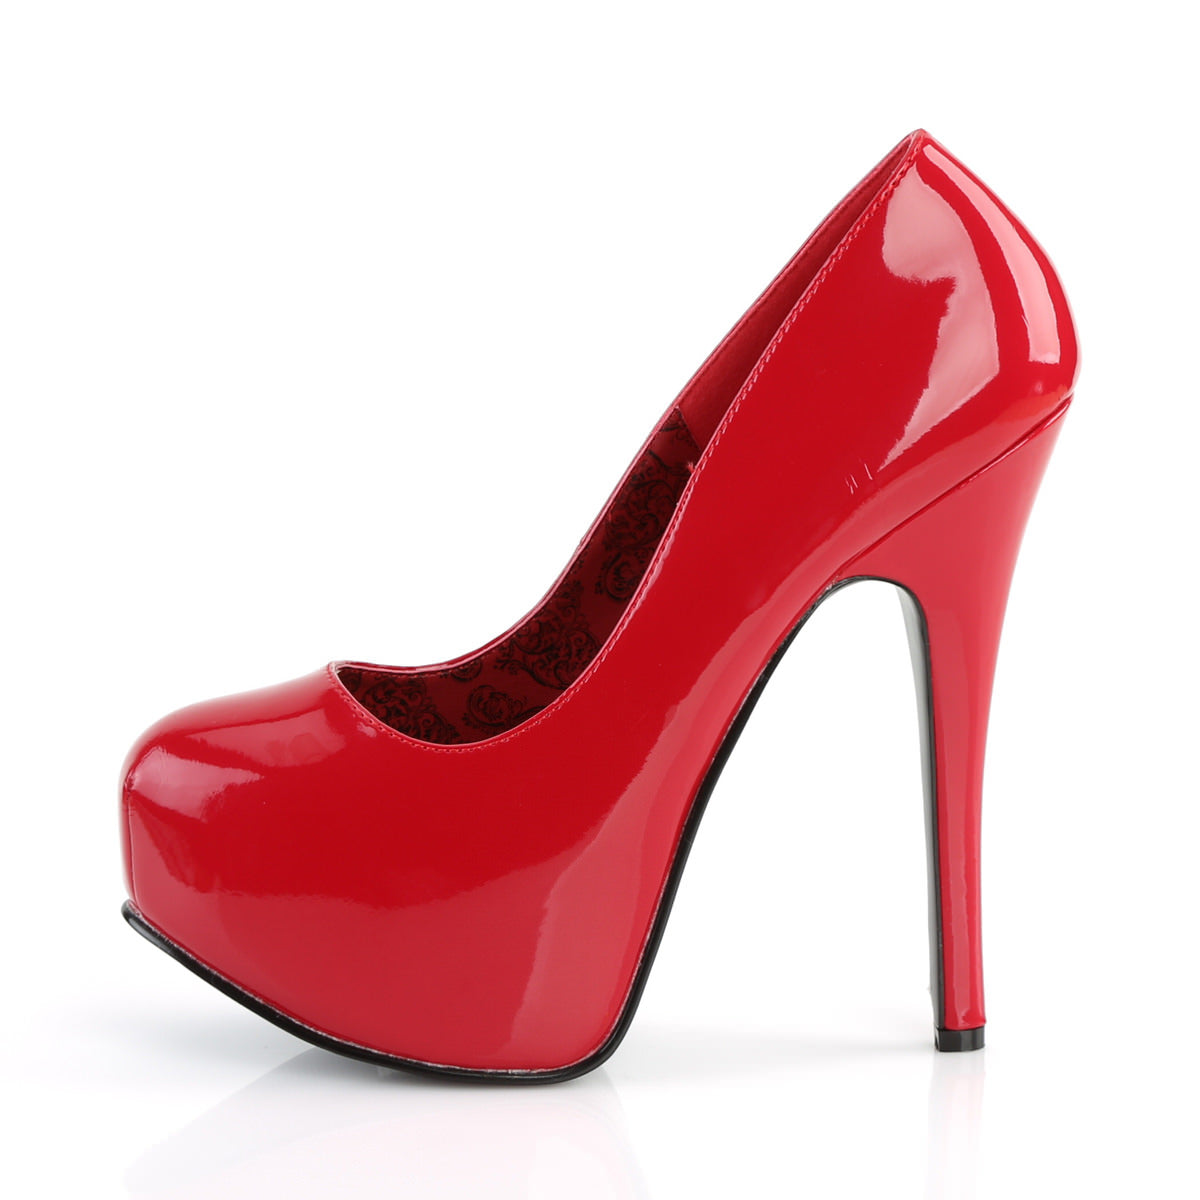 5 Inch Heel TEEZE-06 Red Patent